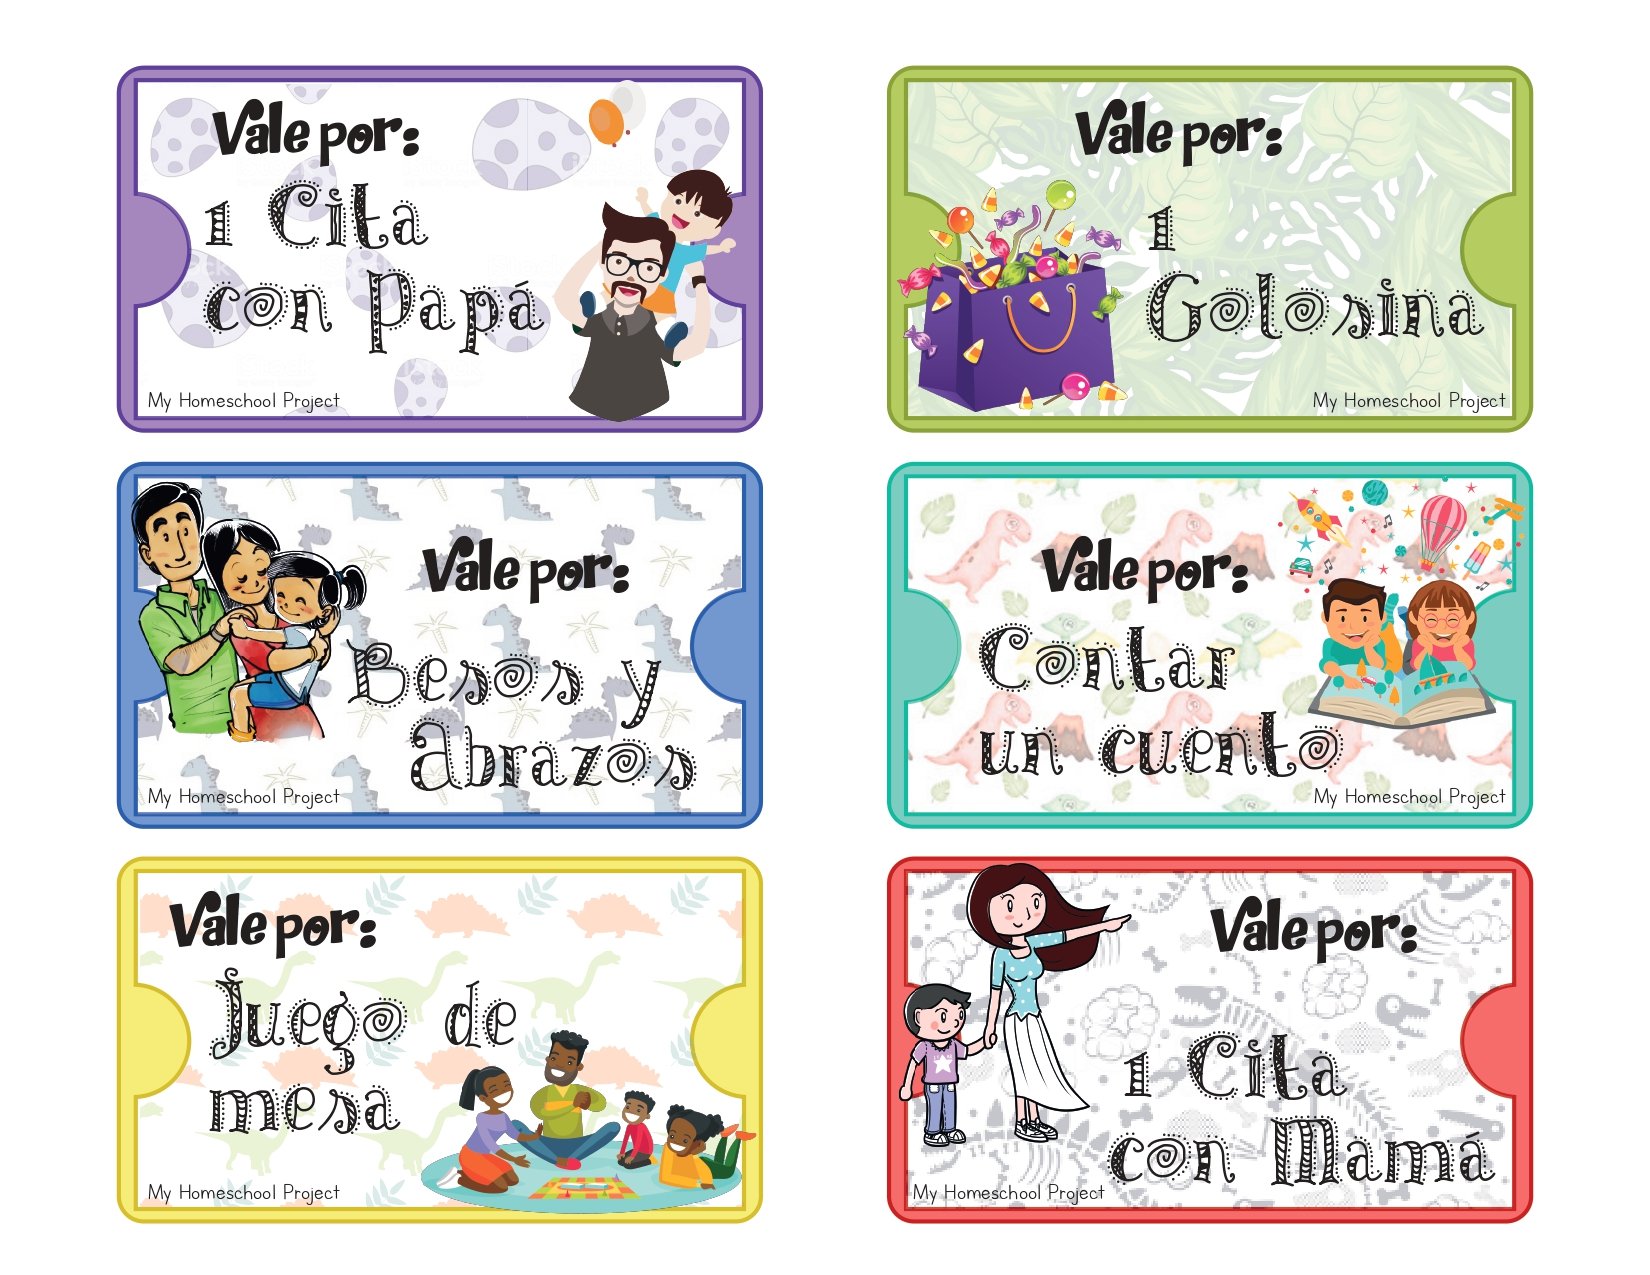 Vale Por Para Imprimir Talonario de vales - My Homeschool Project